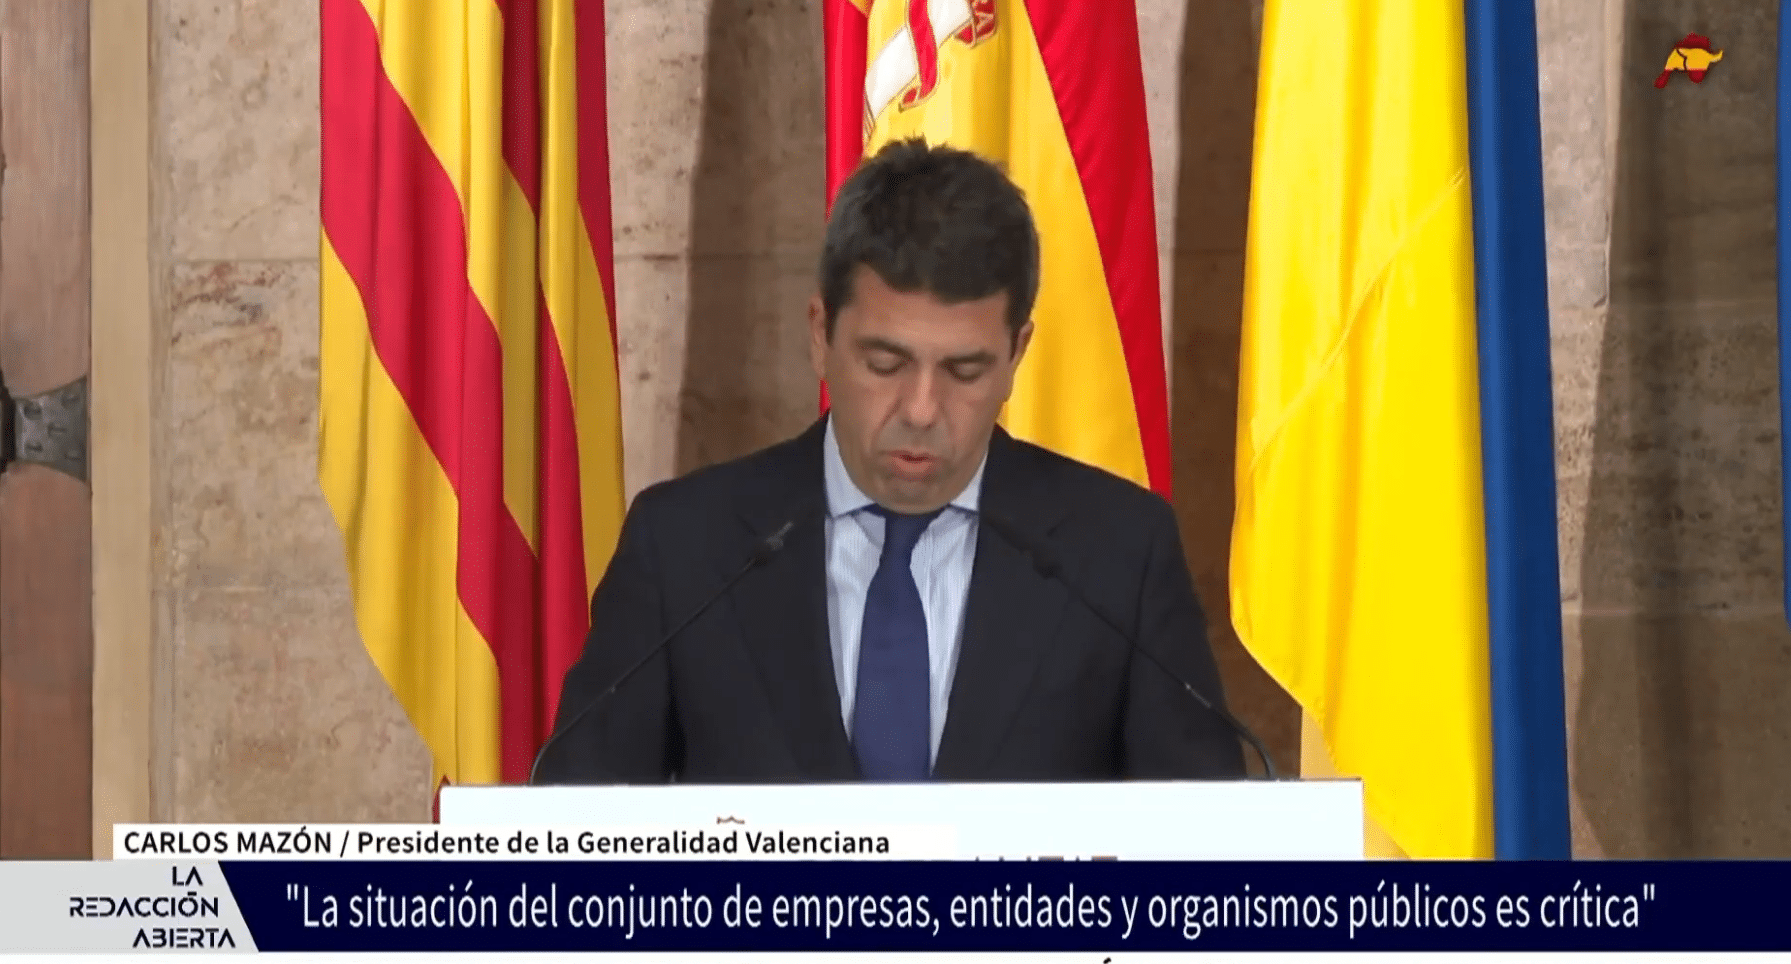  Mazón tira de la manta en la Generalidad Valenciana y destapa todas las irregularidades de Ximo Puig